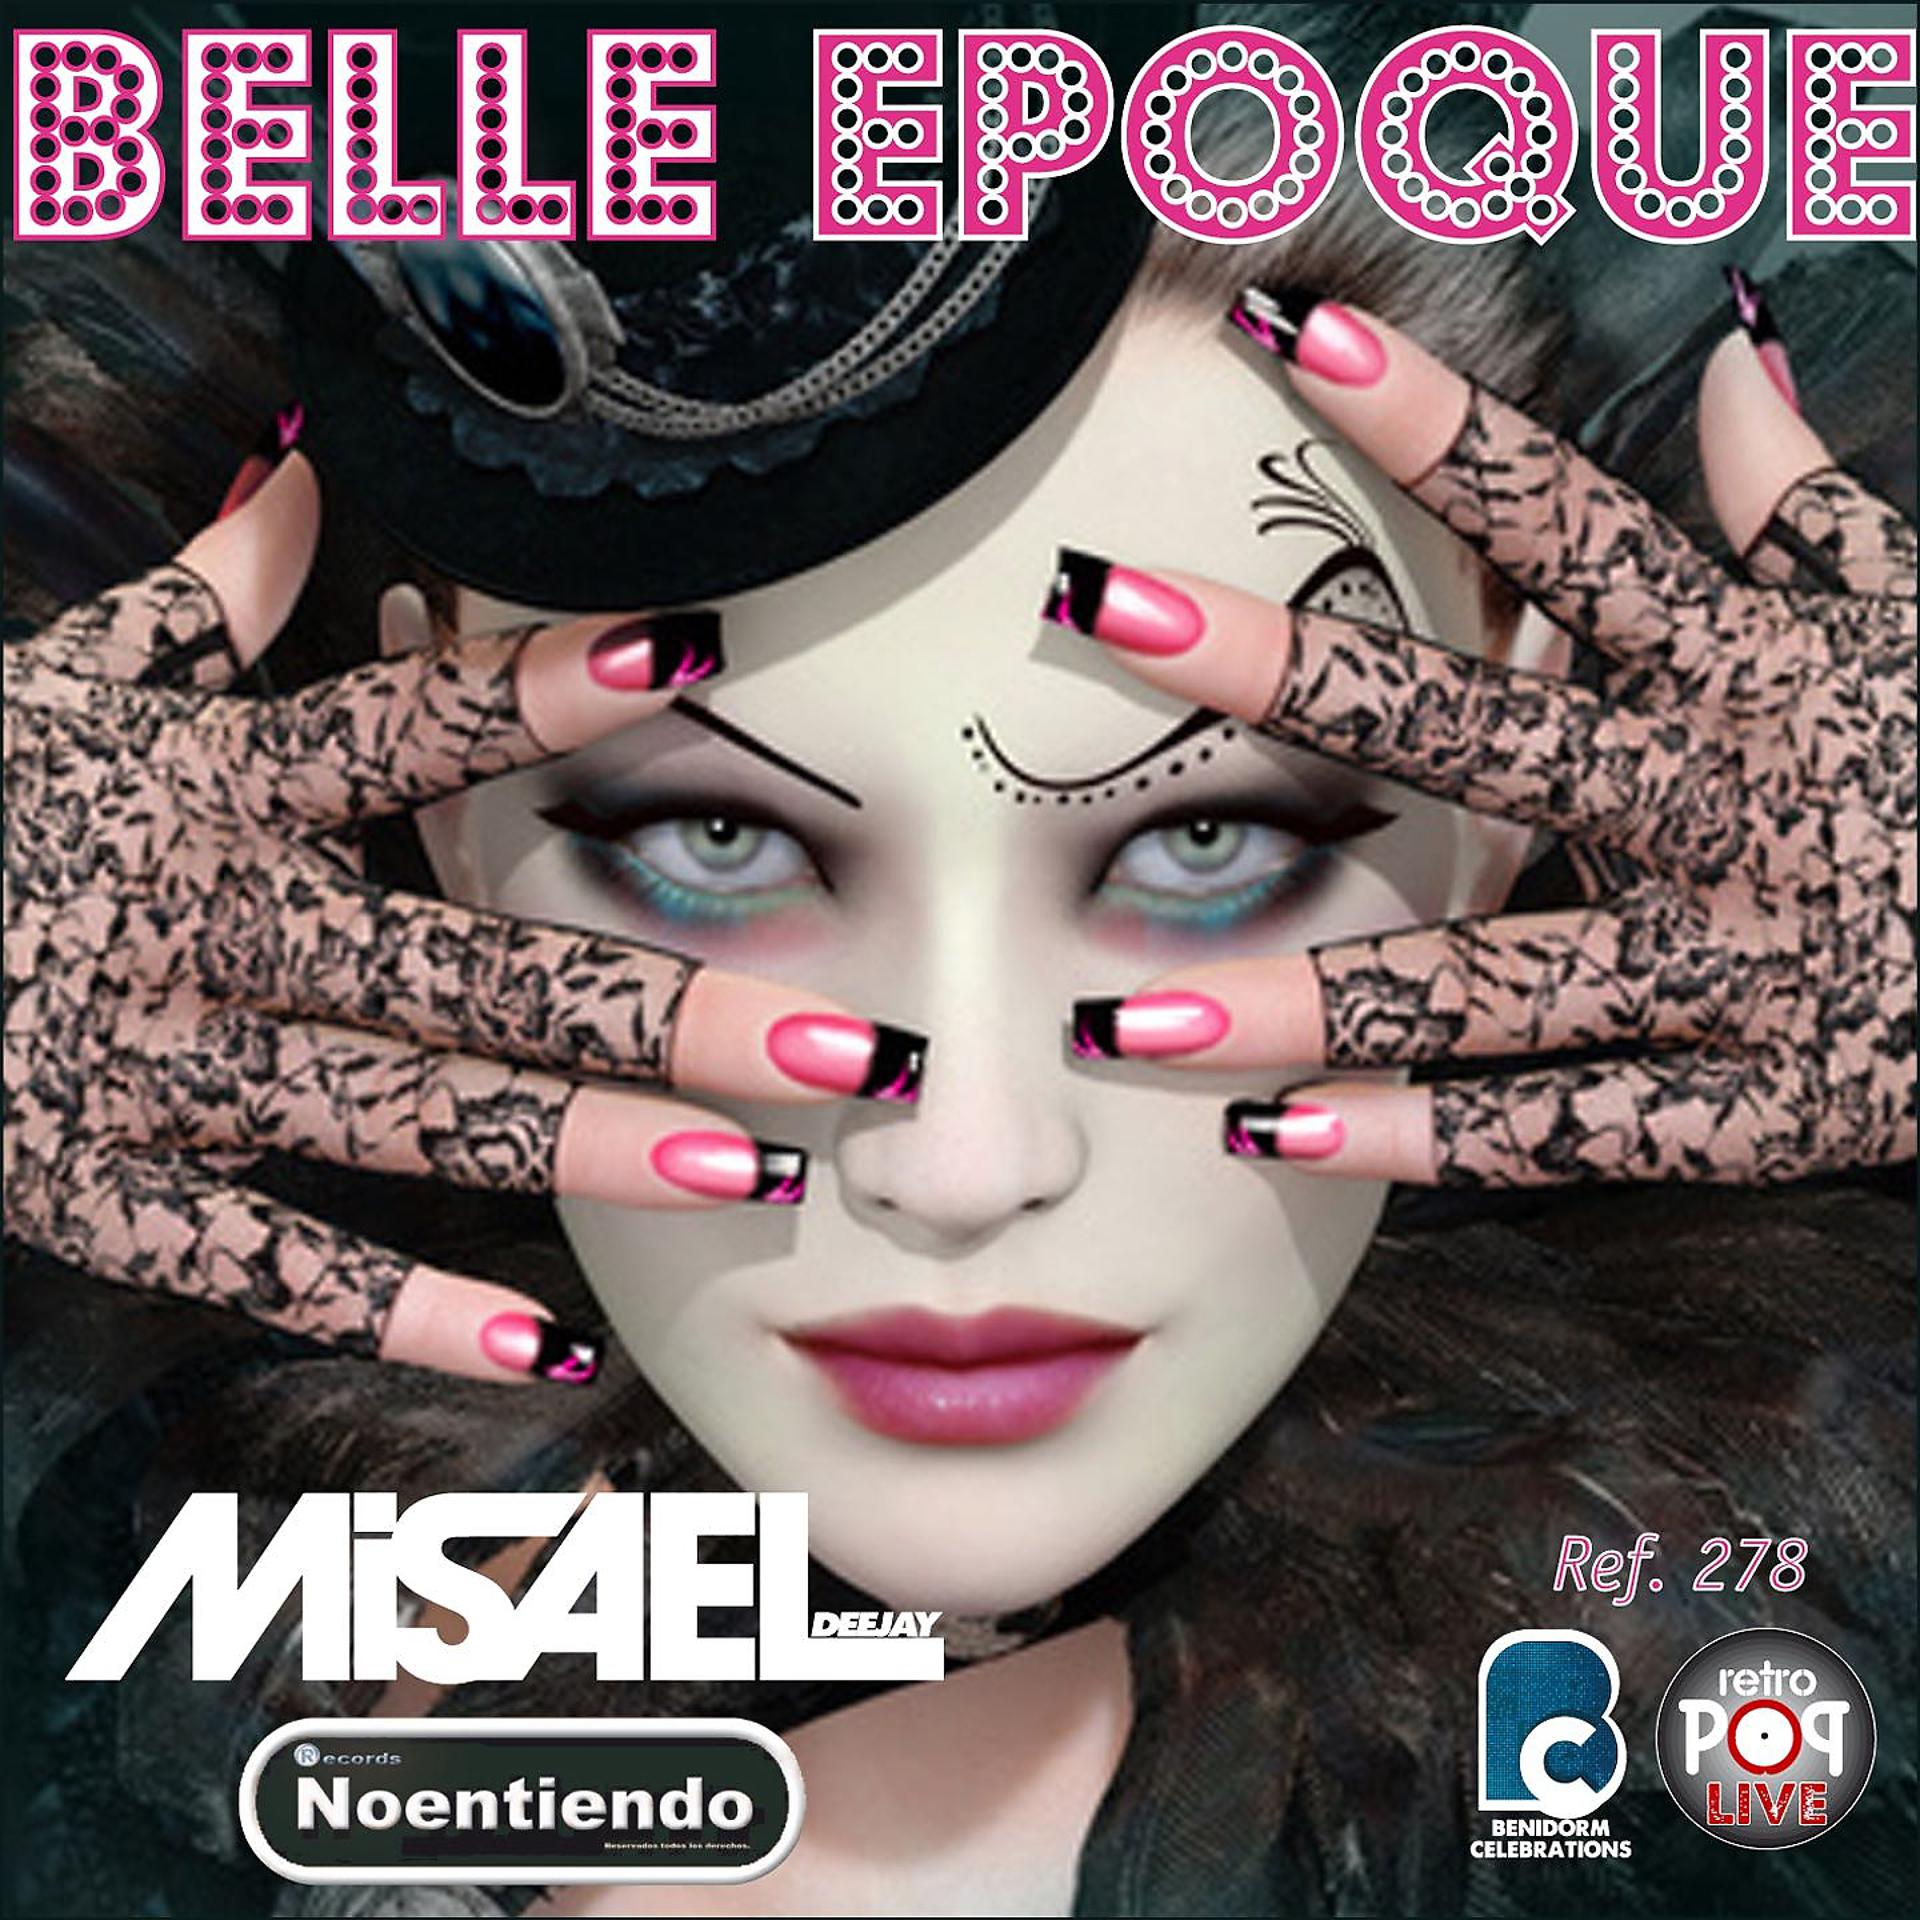 Постер альбома Belle Epoque